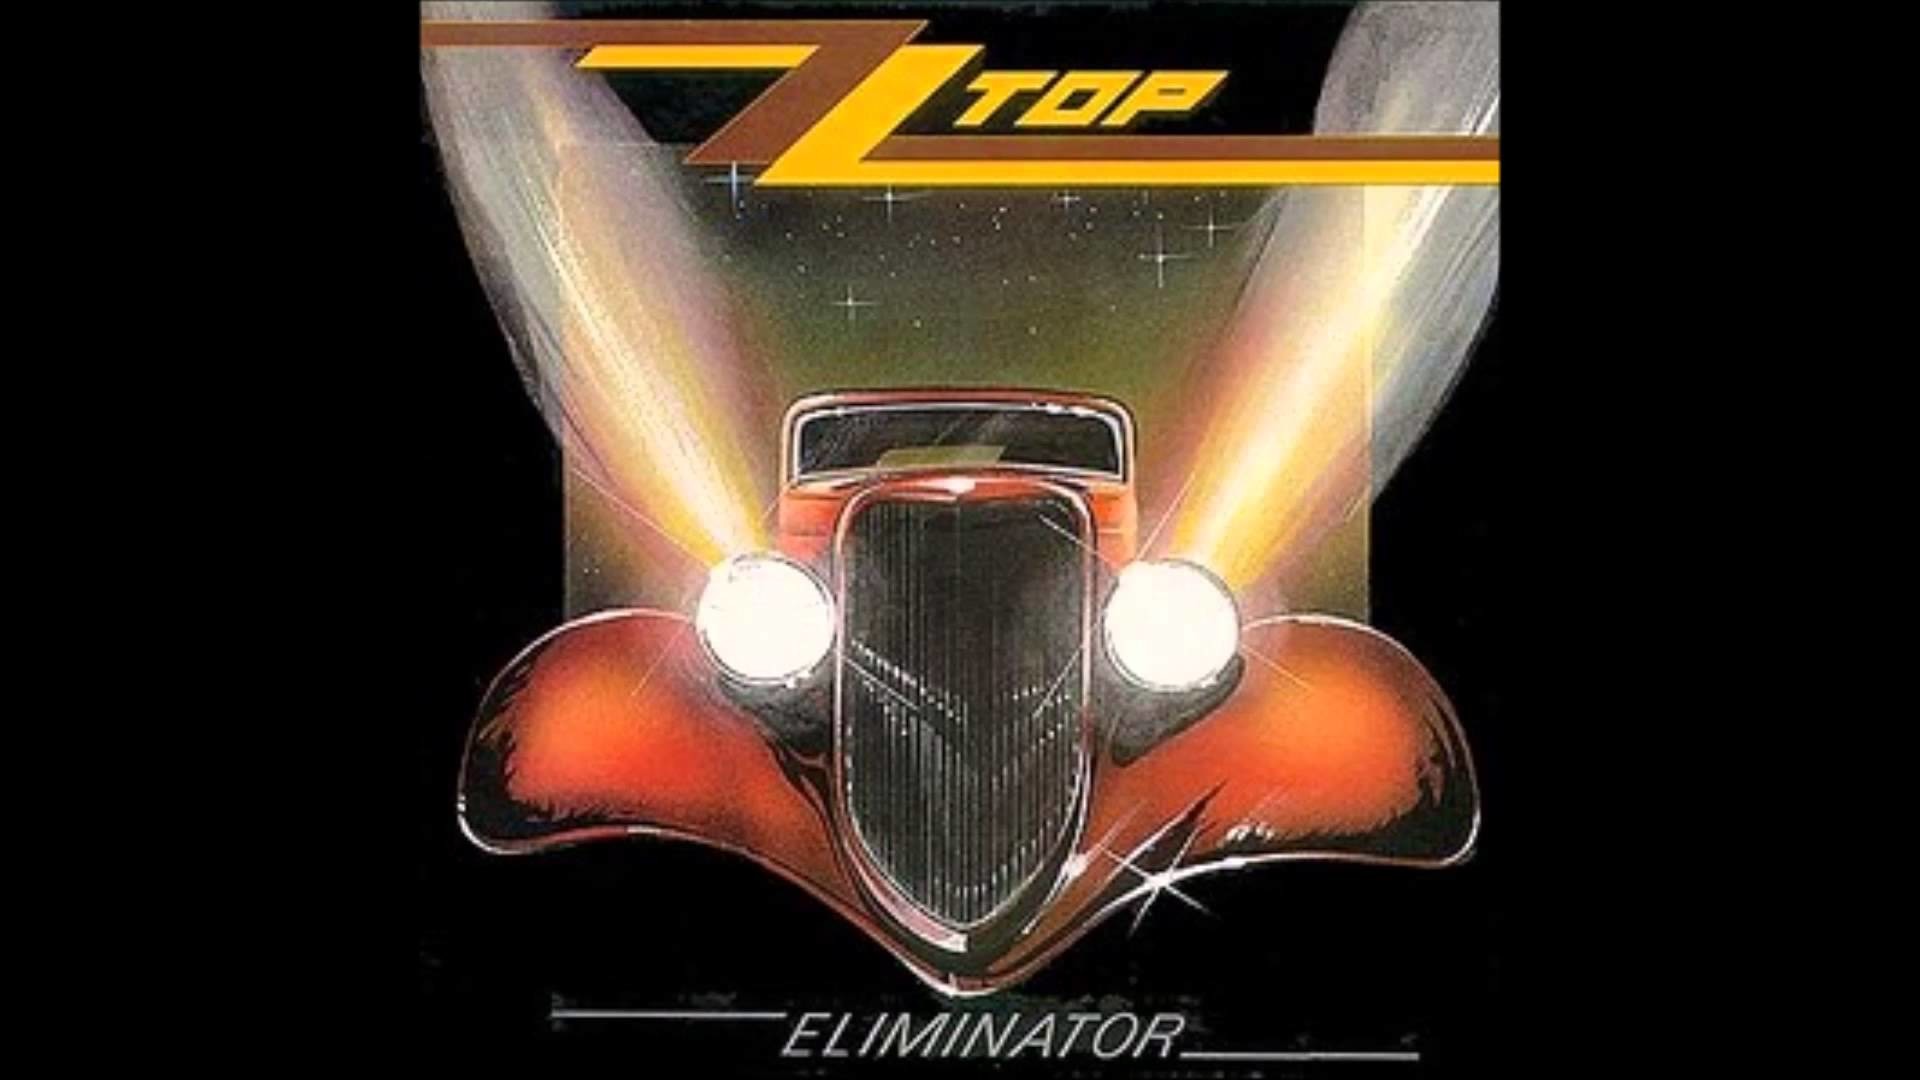 1920x1080 ZZ Top - Eliminator (X2) - 1983 - 33 RPM